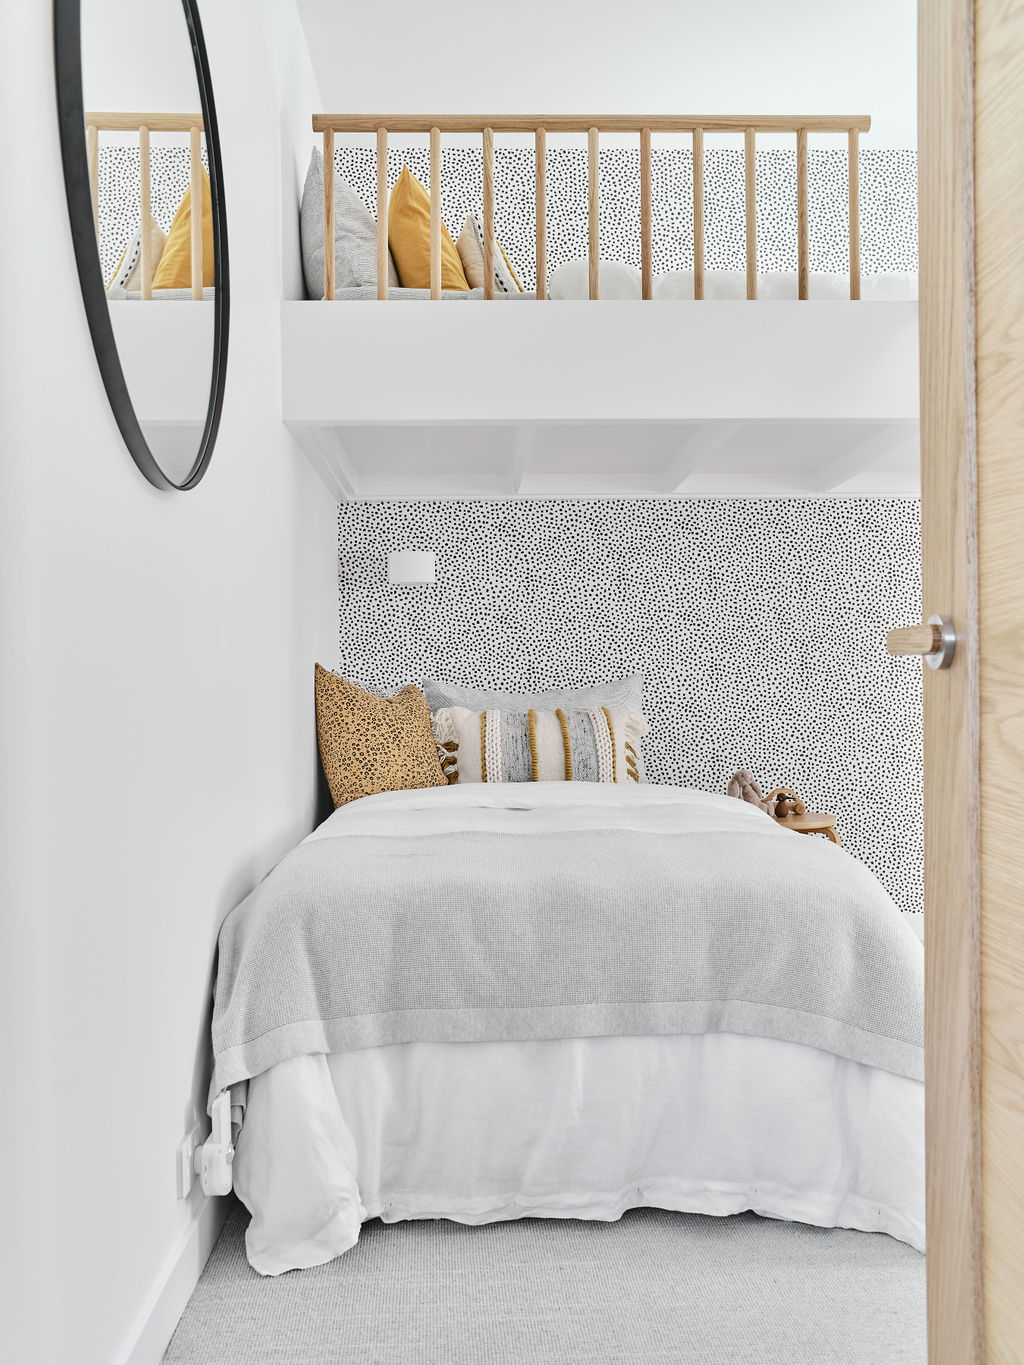 Dalmatian print wallpaper in childrens bunk bed room